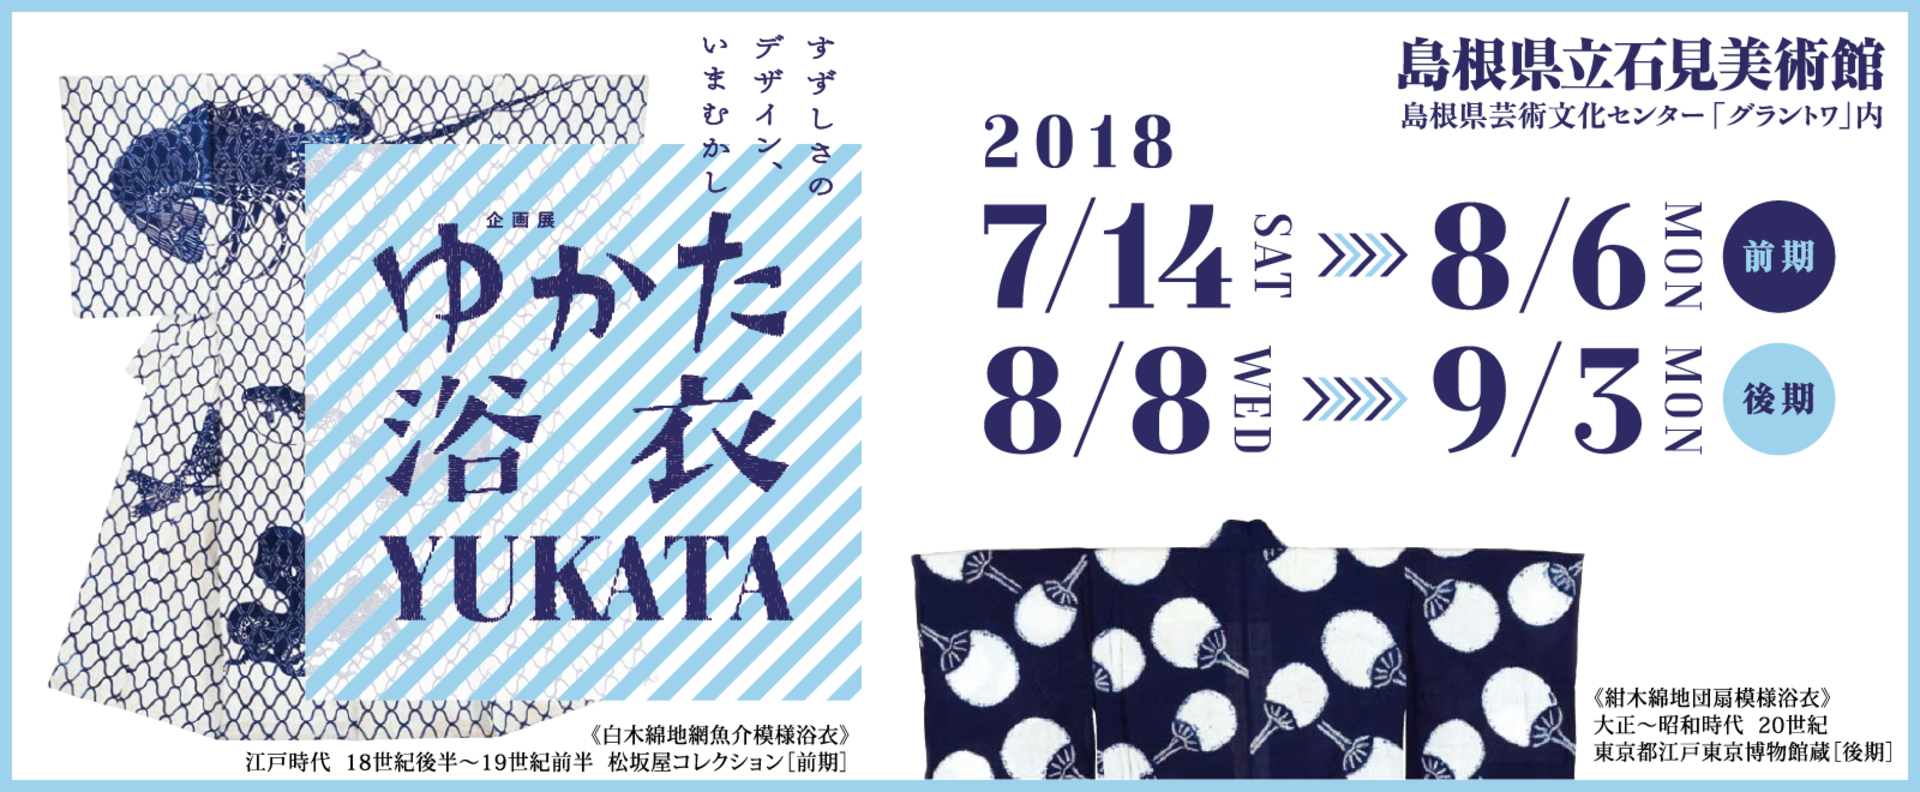 1920x banner yukata yukata yukata